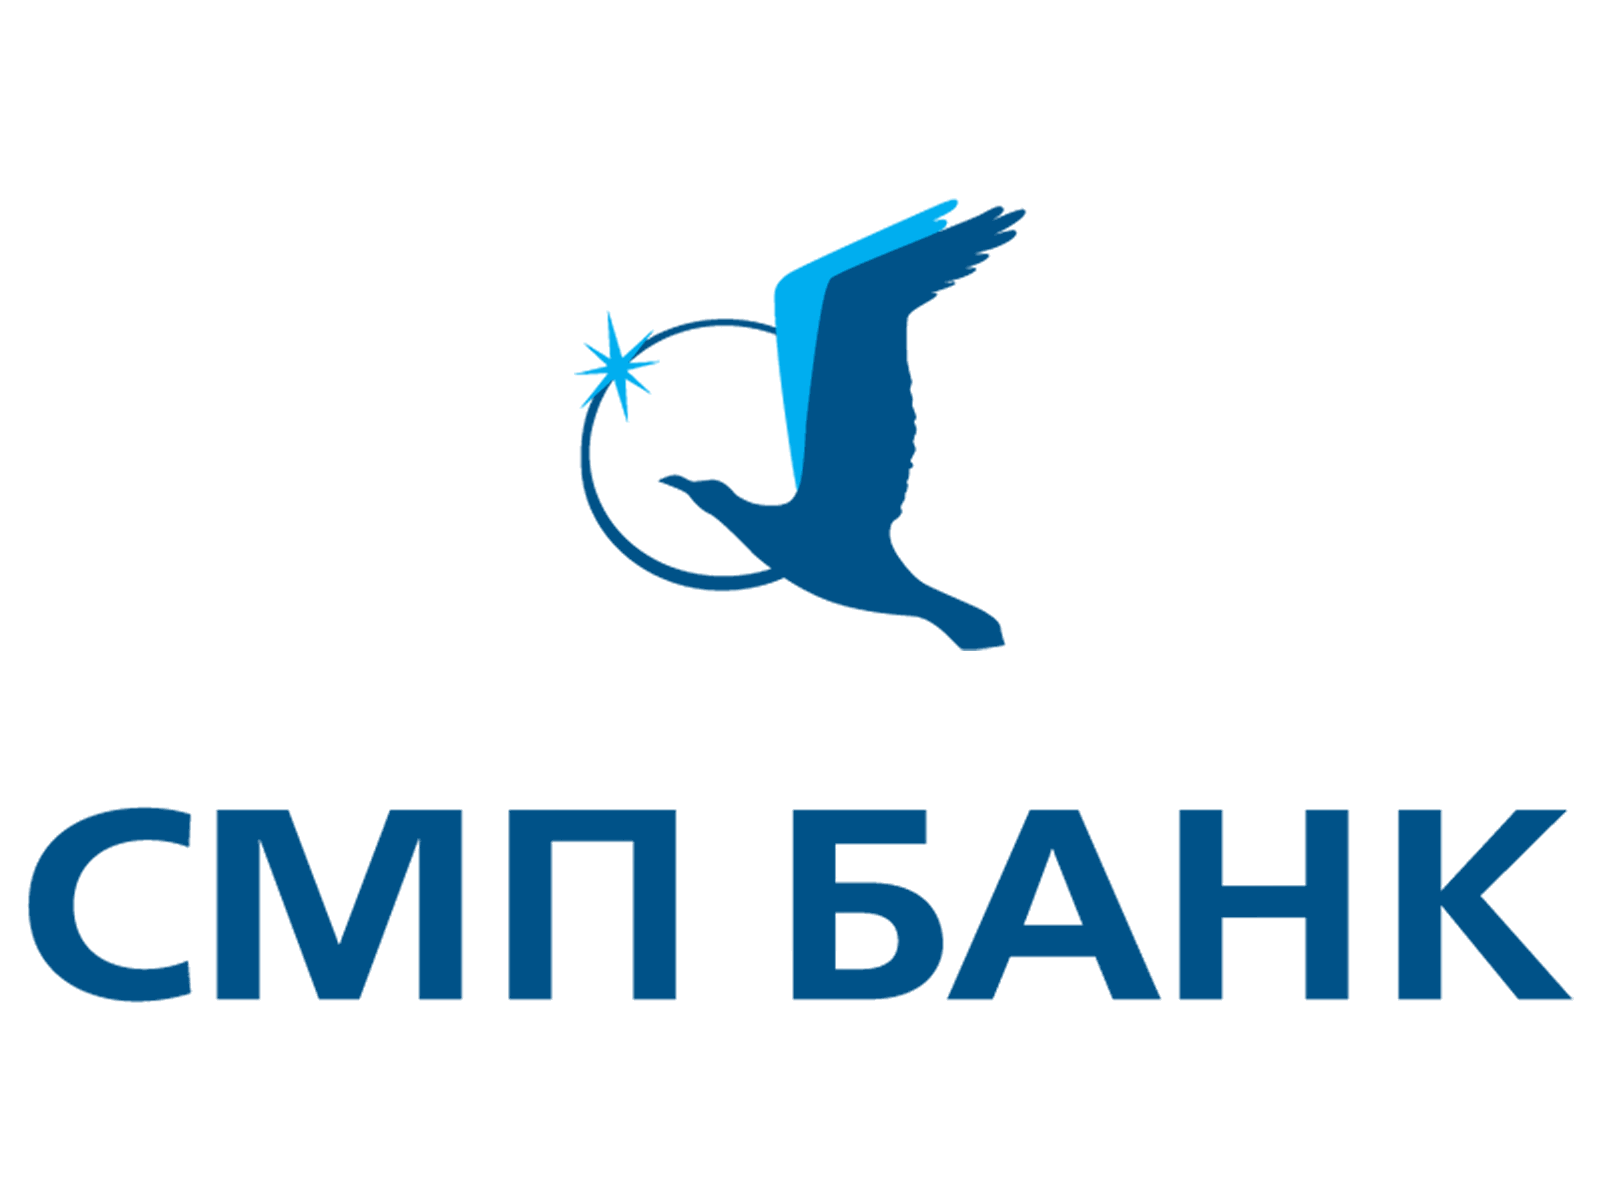 СМП-Банк